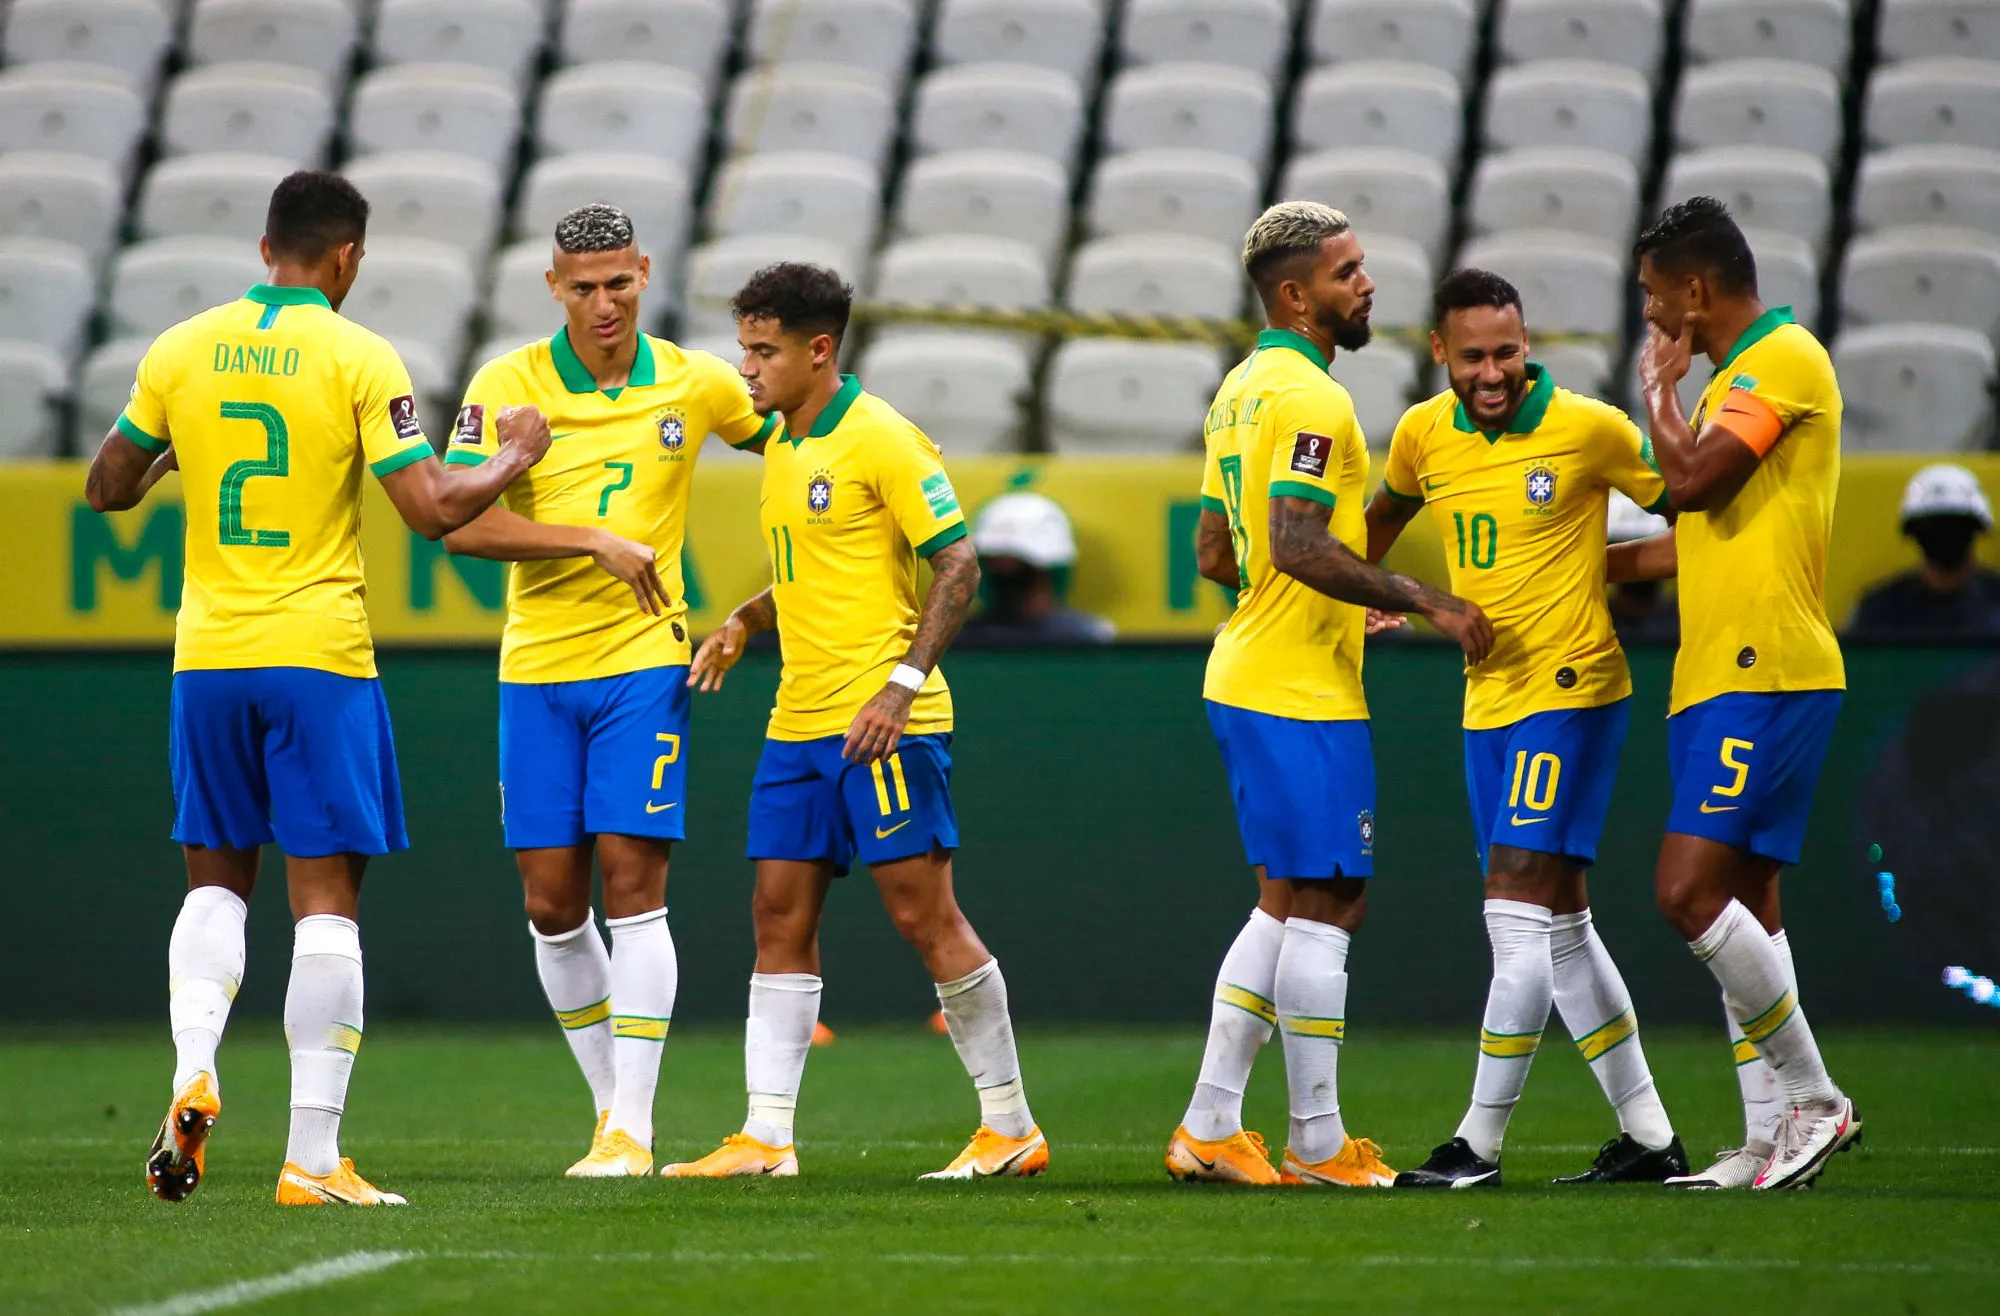 Pronostic Brésil Paraguay : Analyse, cotes et prono du match des éliminatoires de la Coupe du monde 2022